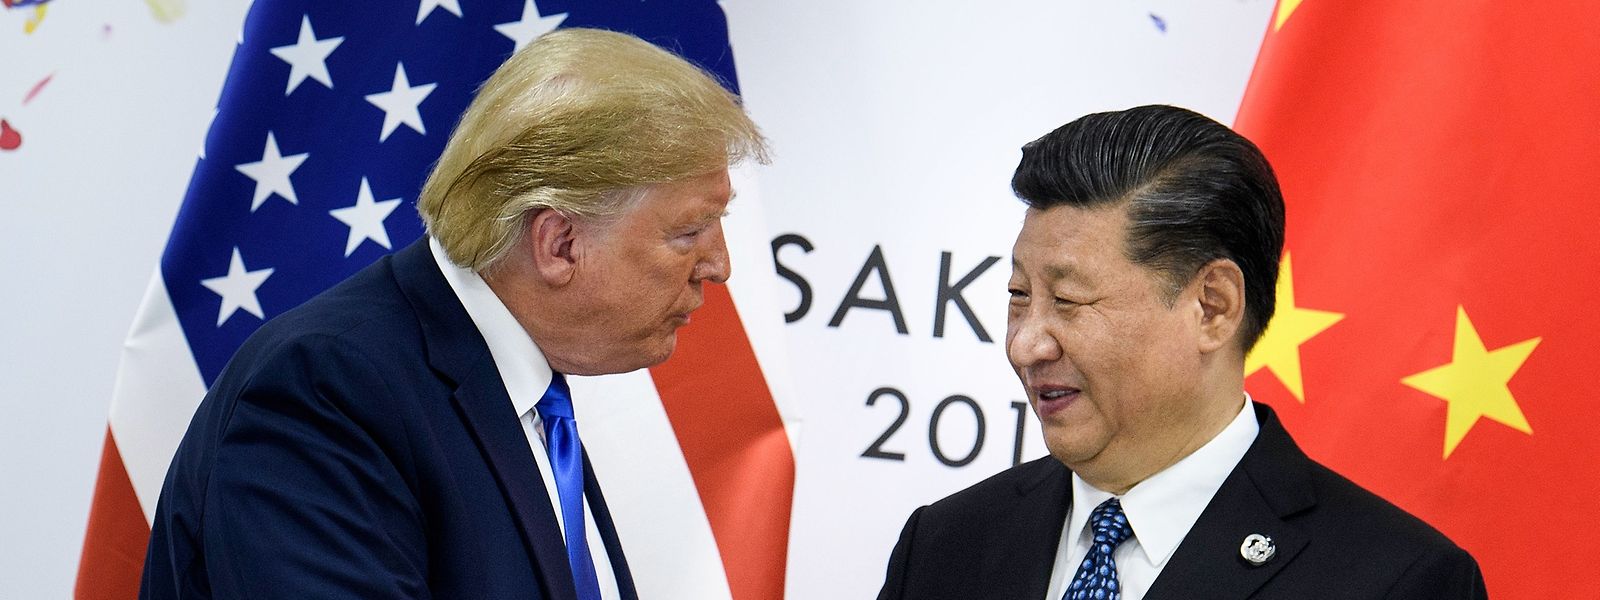 Zwischen Donald Trump und Xi Jinping (r.) knirscht es gewaltig.